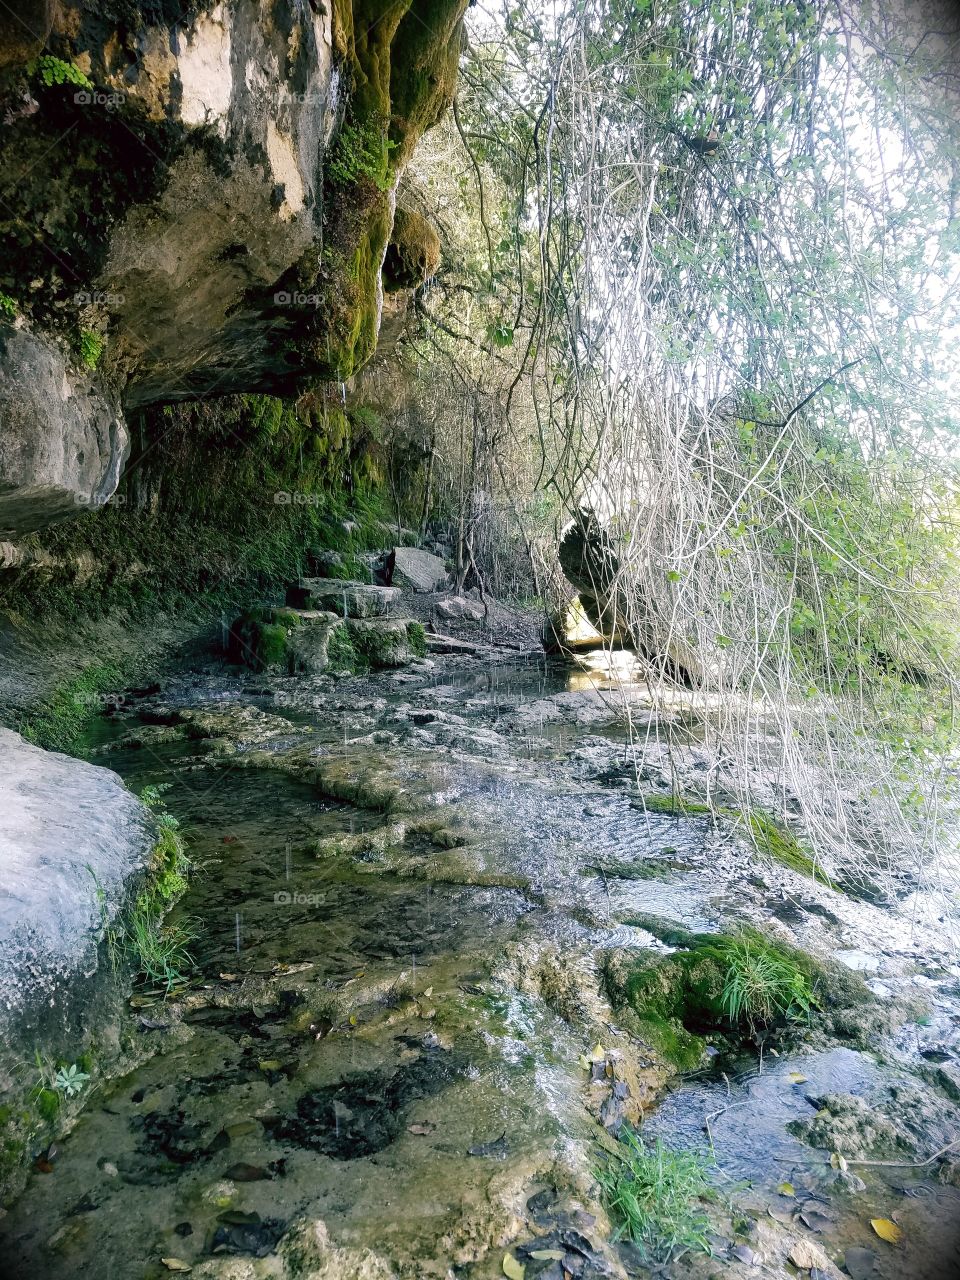 Natural springs